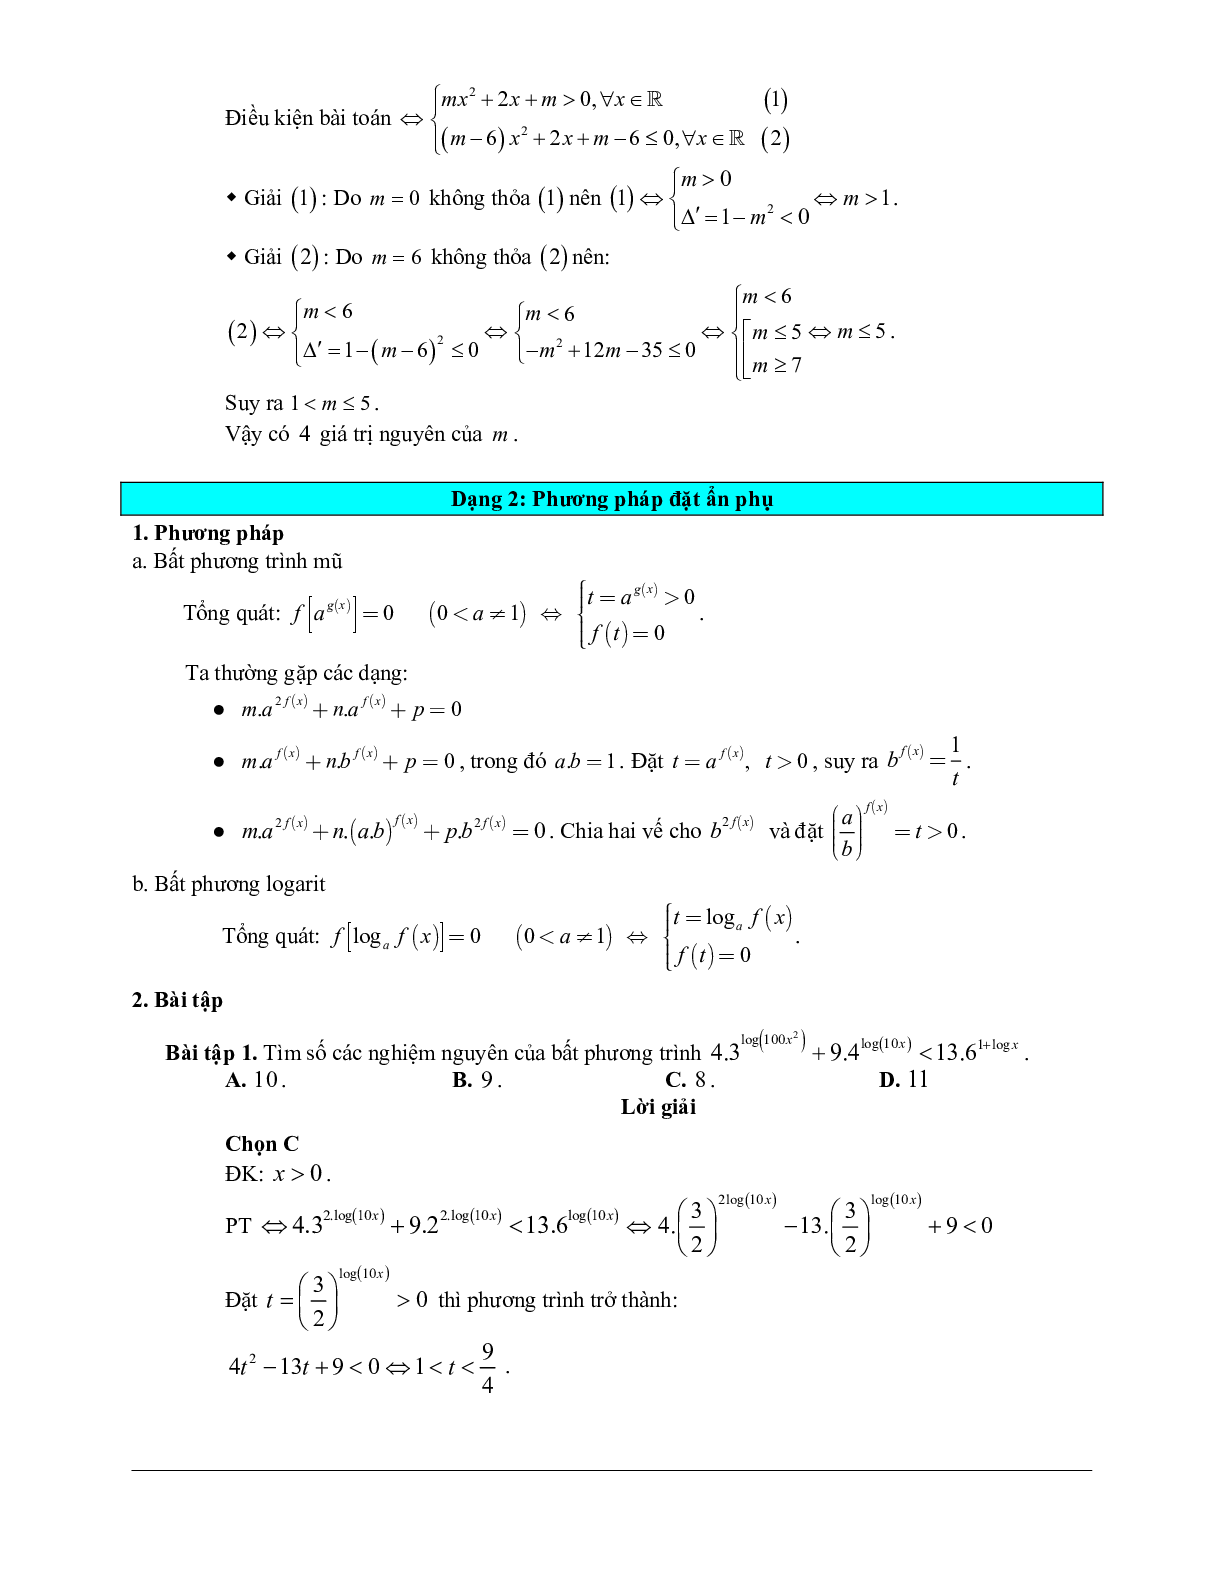 Các bài tập vận dụng cao bất phương trình mũ và bất phương trình logarit (trang 9)